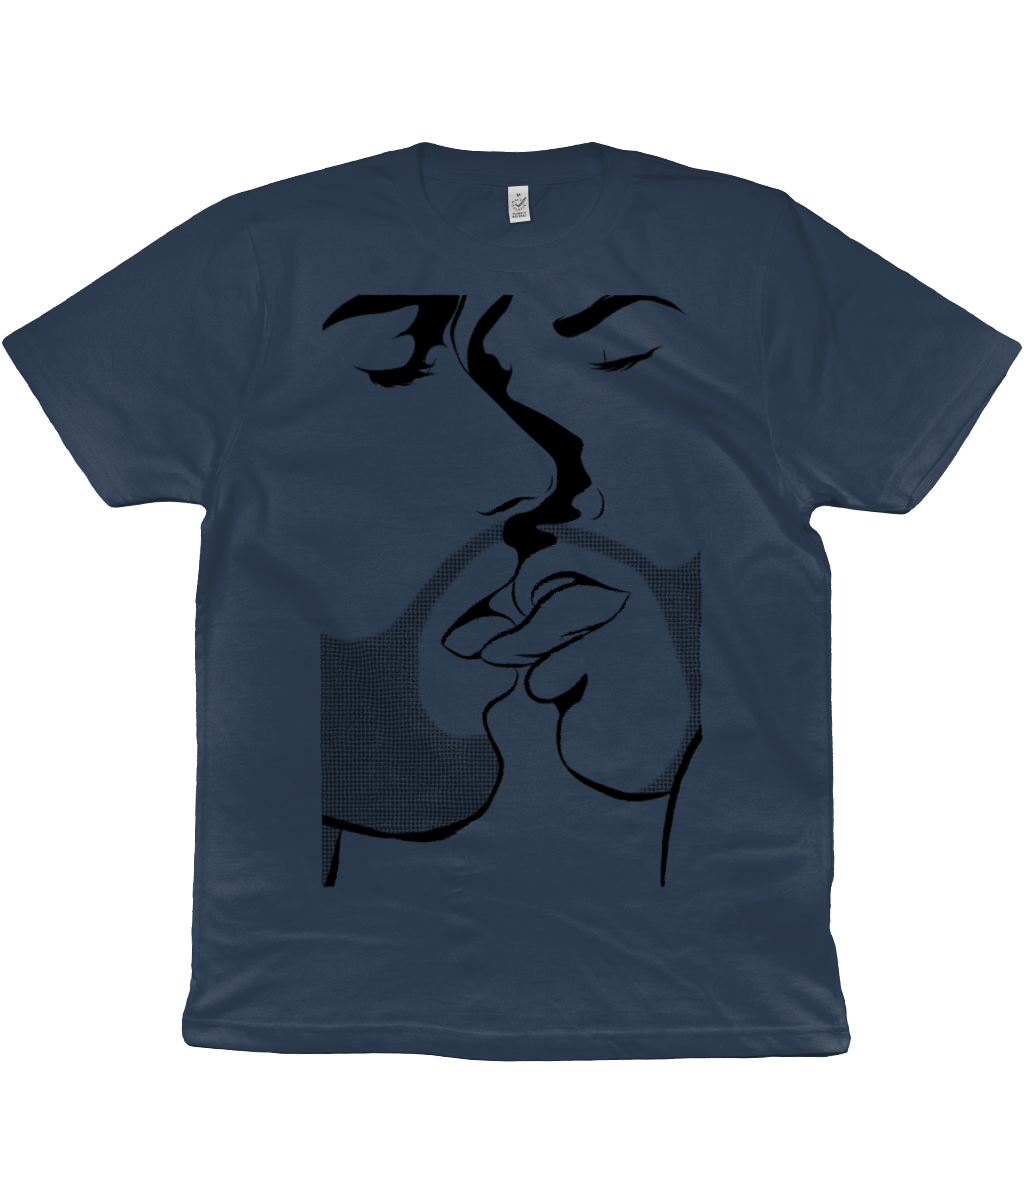 The Kiss Organic Cotton T-Shirt